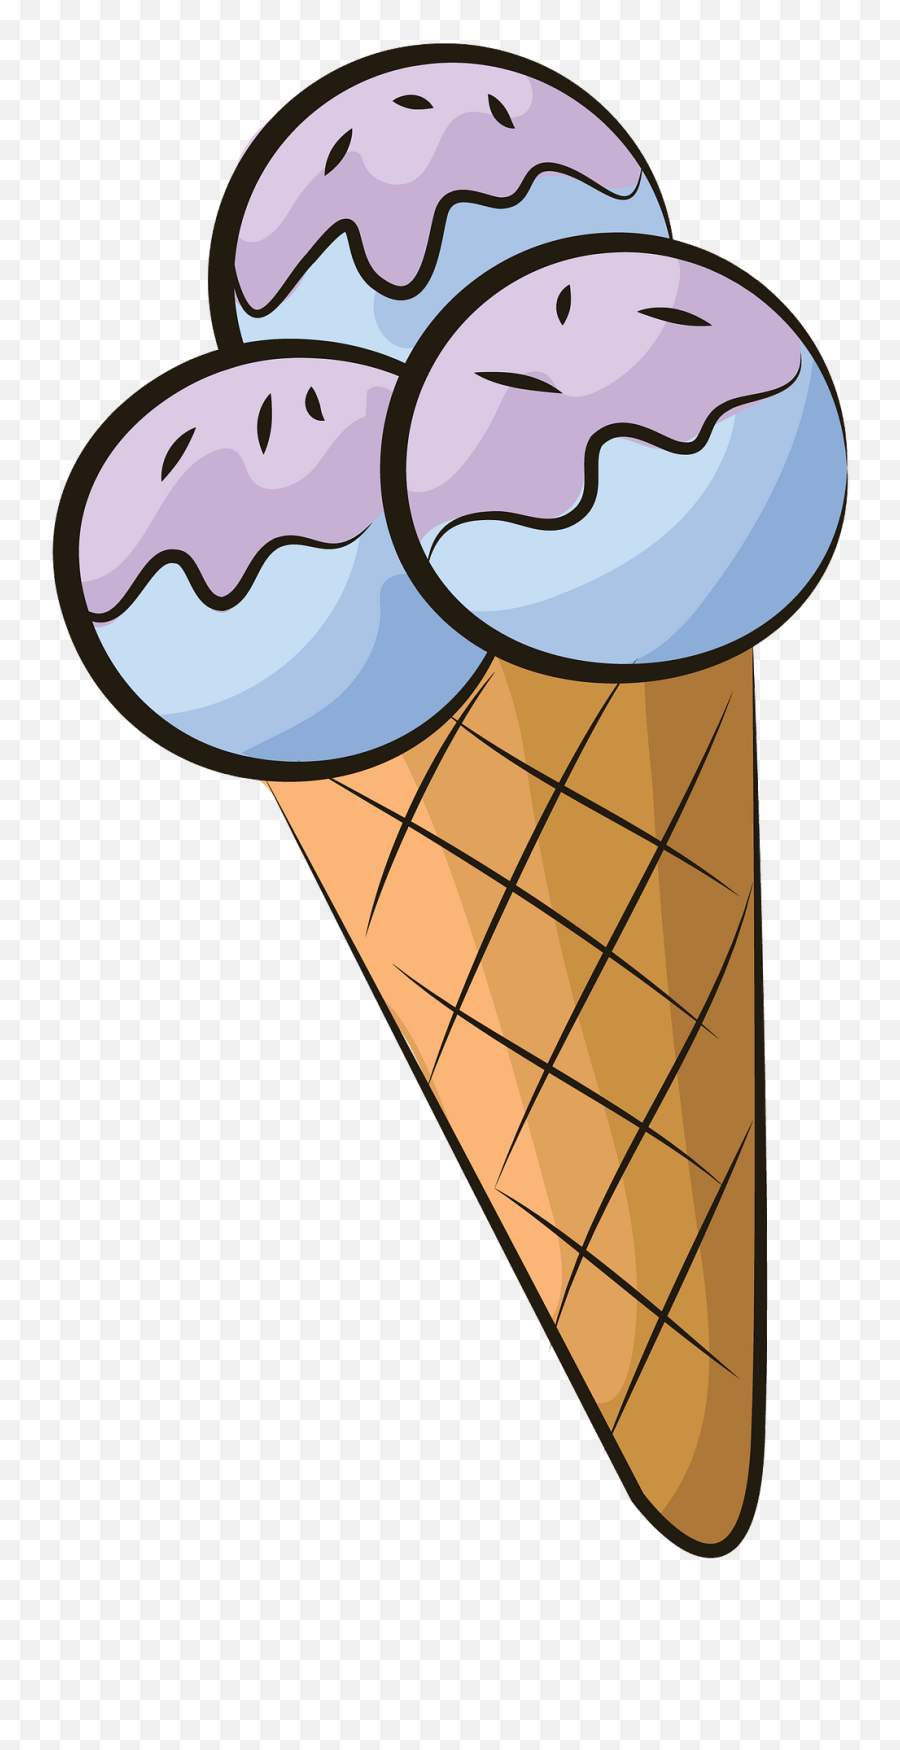 Ice Cream Cone Clipart - Ice Cream Cone Clipart Emoji,Ice Cream Cone Clipart